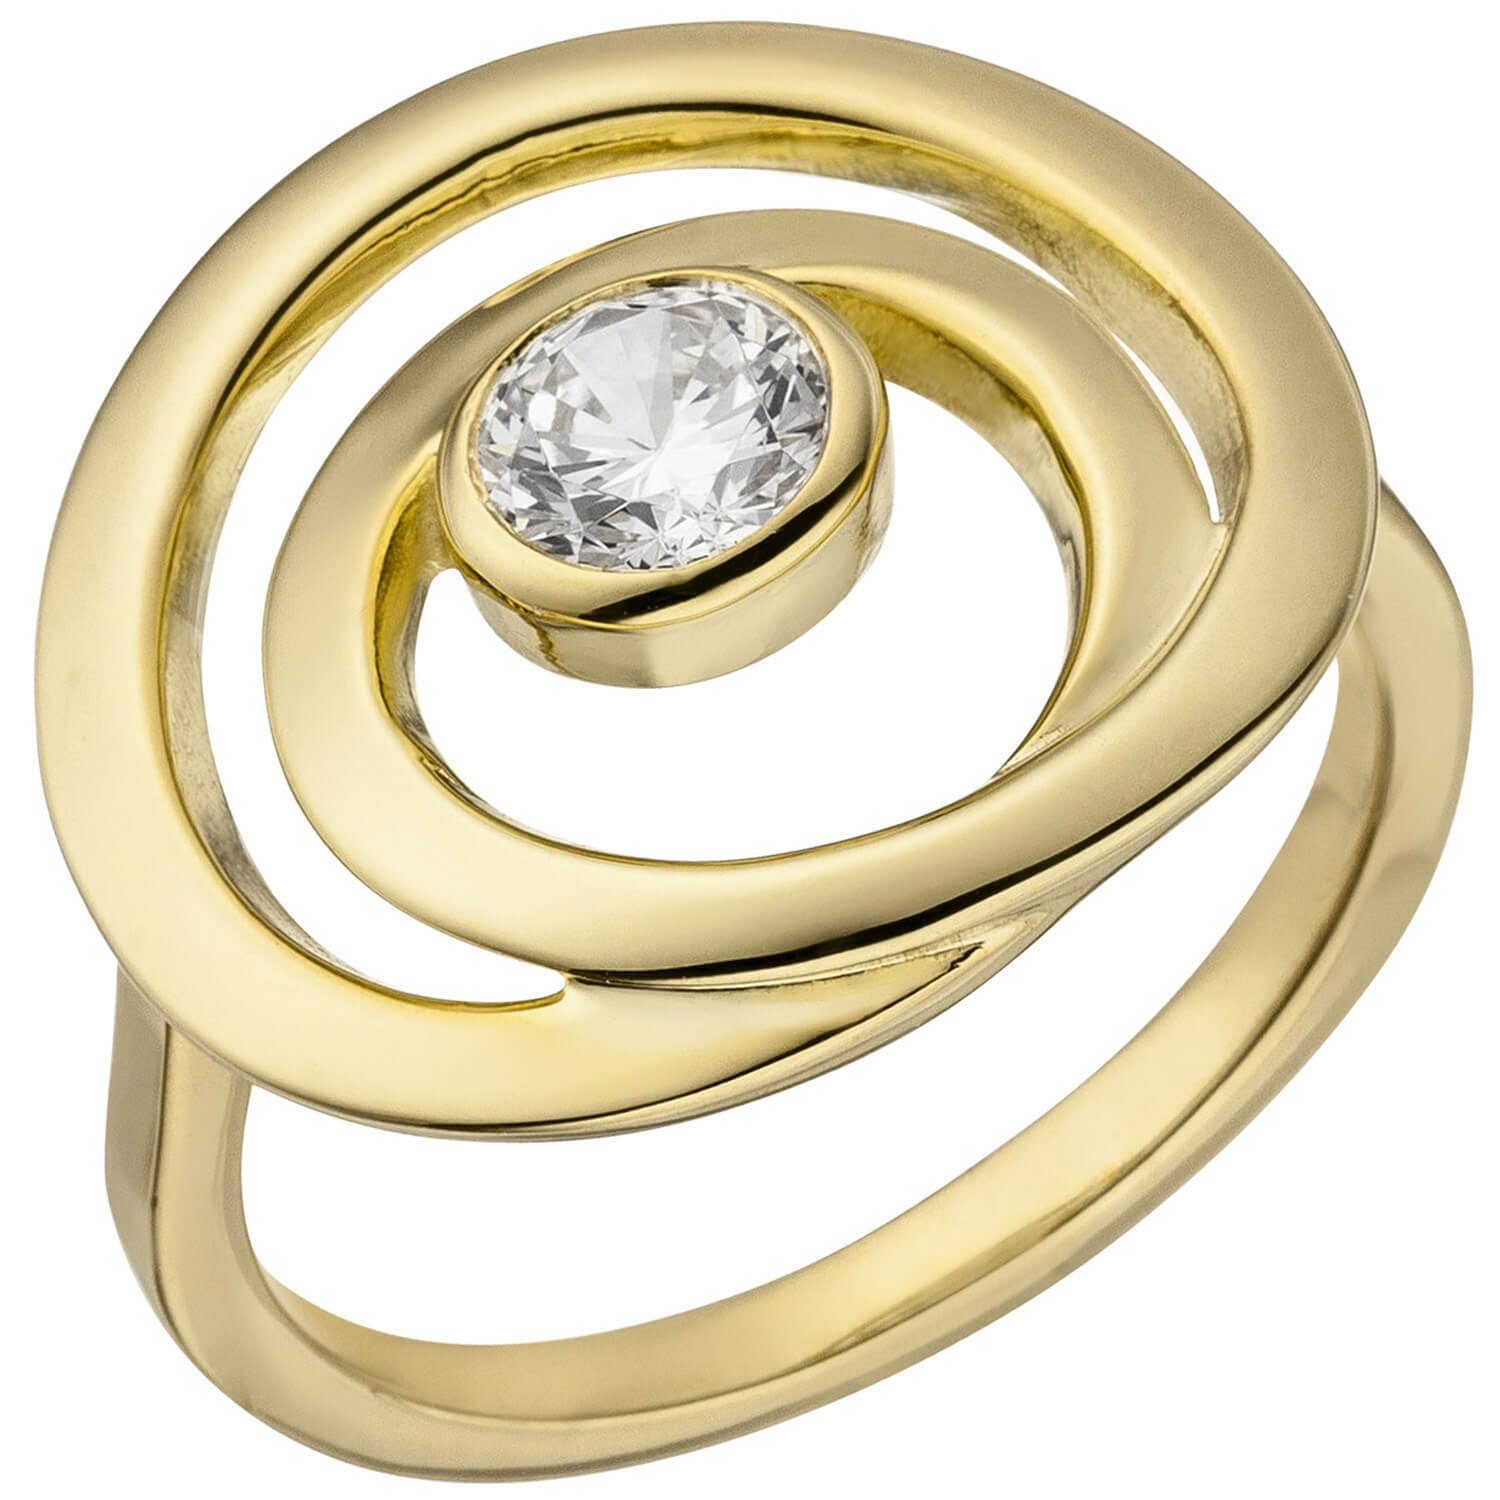 Schmuck Krone Spirale, Zirkonia in 925 einer vergoldet, eleganter Damenring 925 weißer Silber Silberring Ring Silber